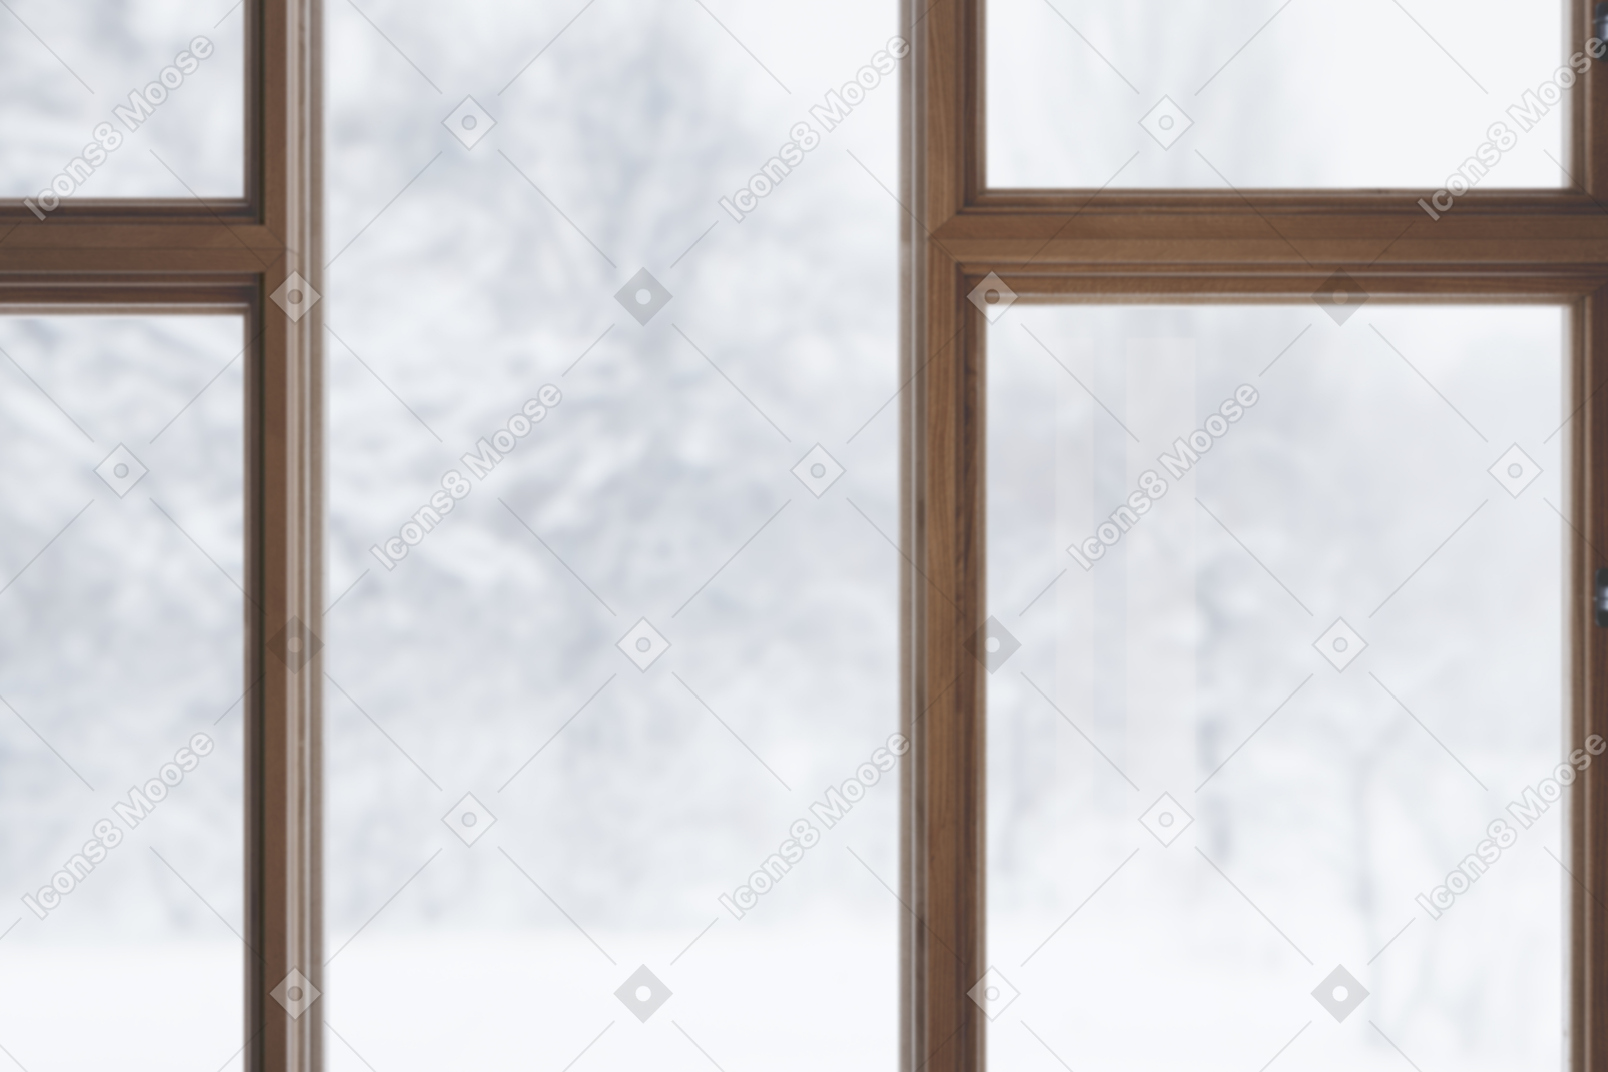 Fenster mit schneebedeckten bäumen draußen